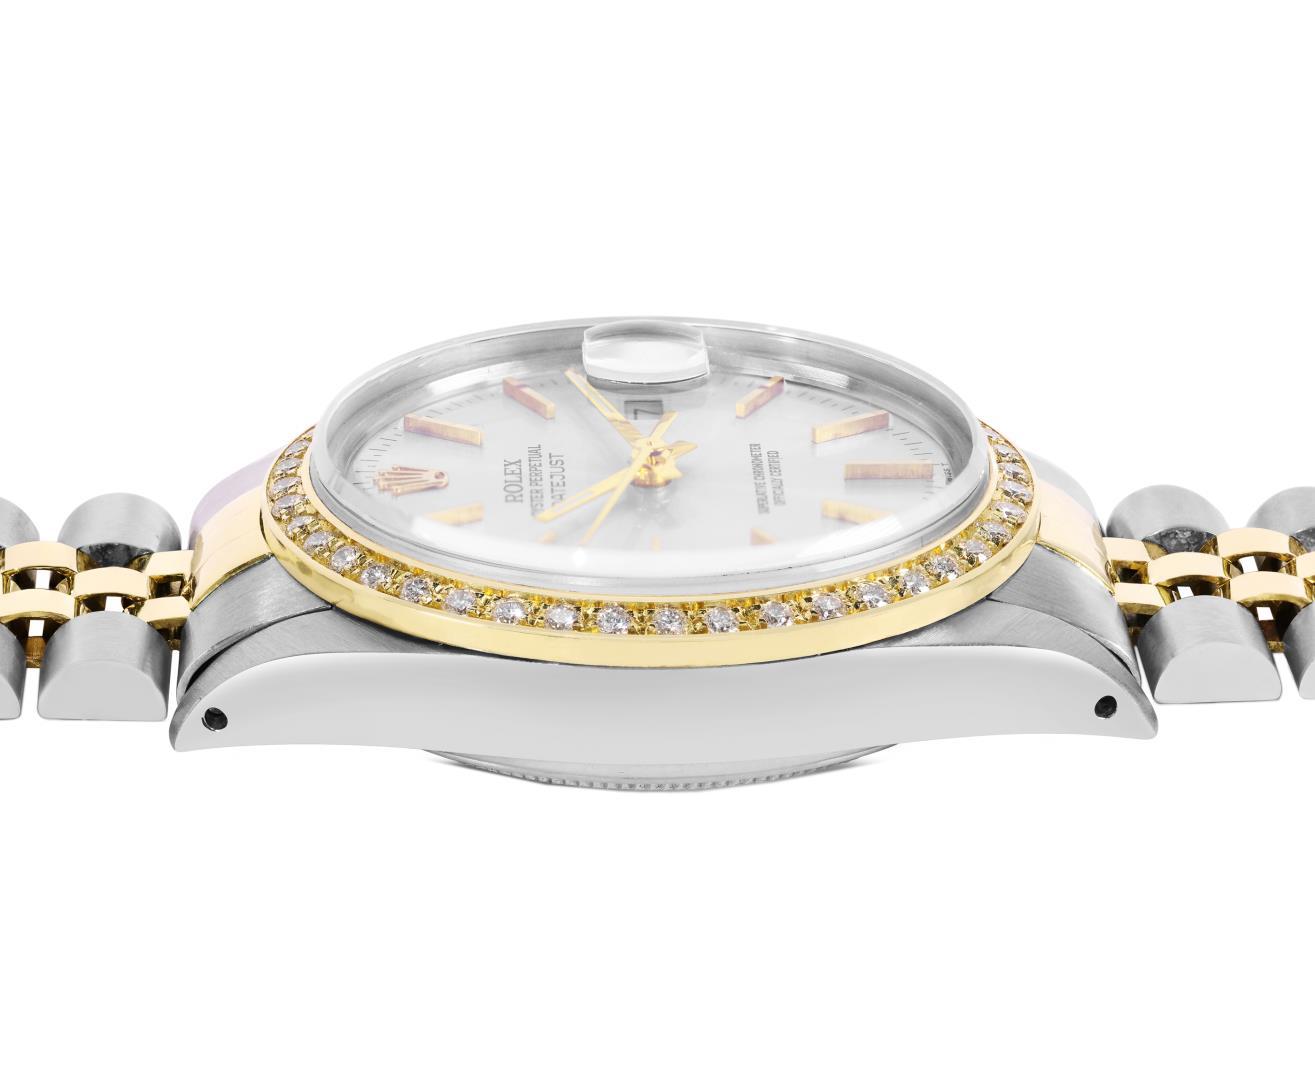 Rolex Mens Two Tone Diamond Datejust Wristwatch With Rolex Box